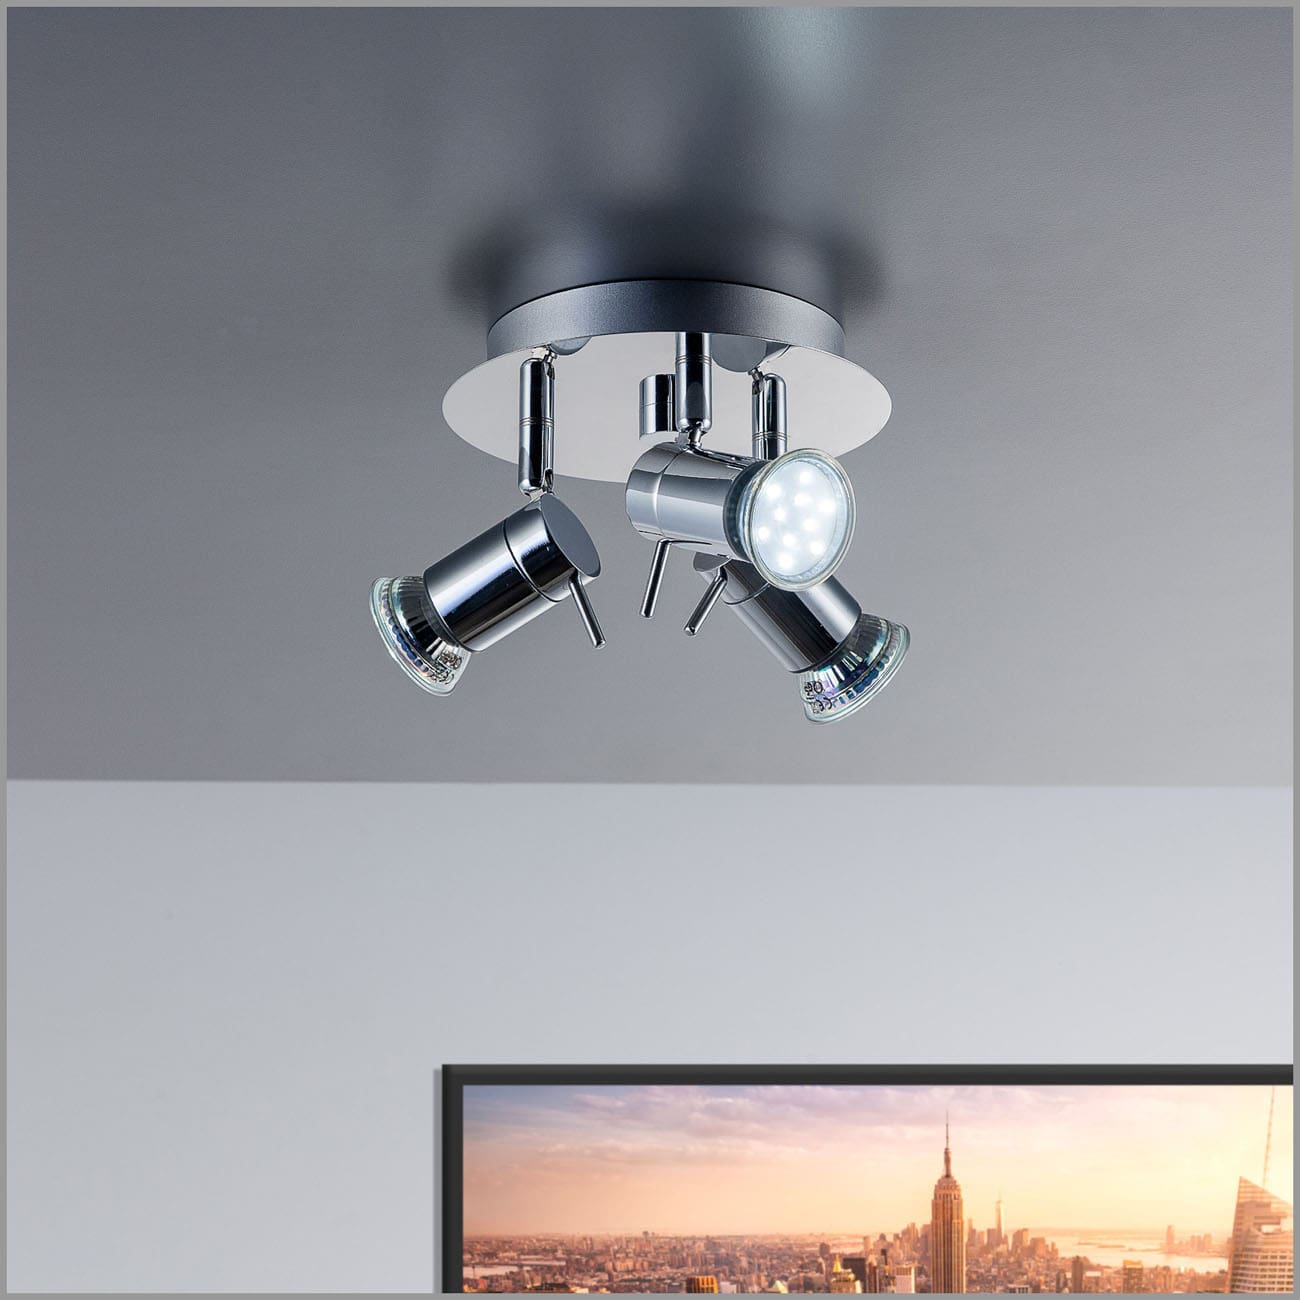 LED Bad-Deckenspot Ø16,5cm - 4-flammig - Badezimmer-Lampe IP44 230V GU10 9W 750lm warmweiß | Chrom - 2